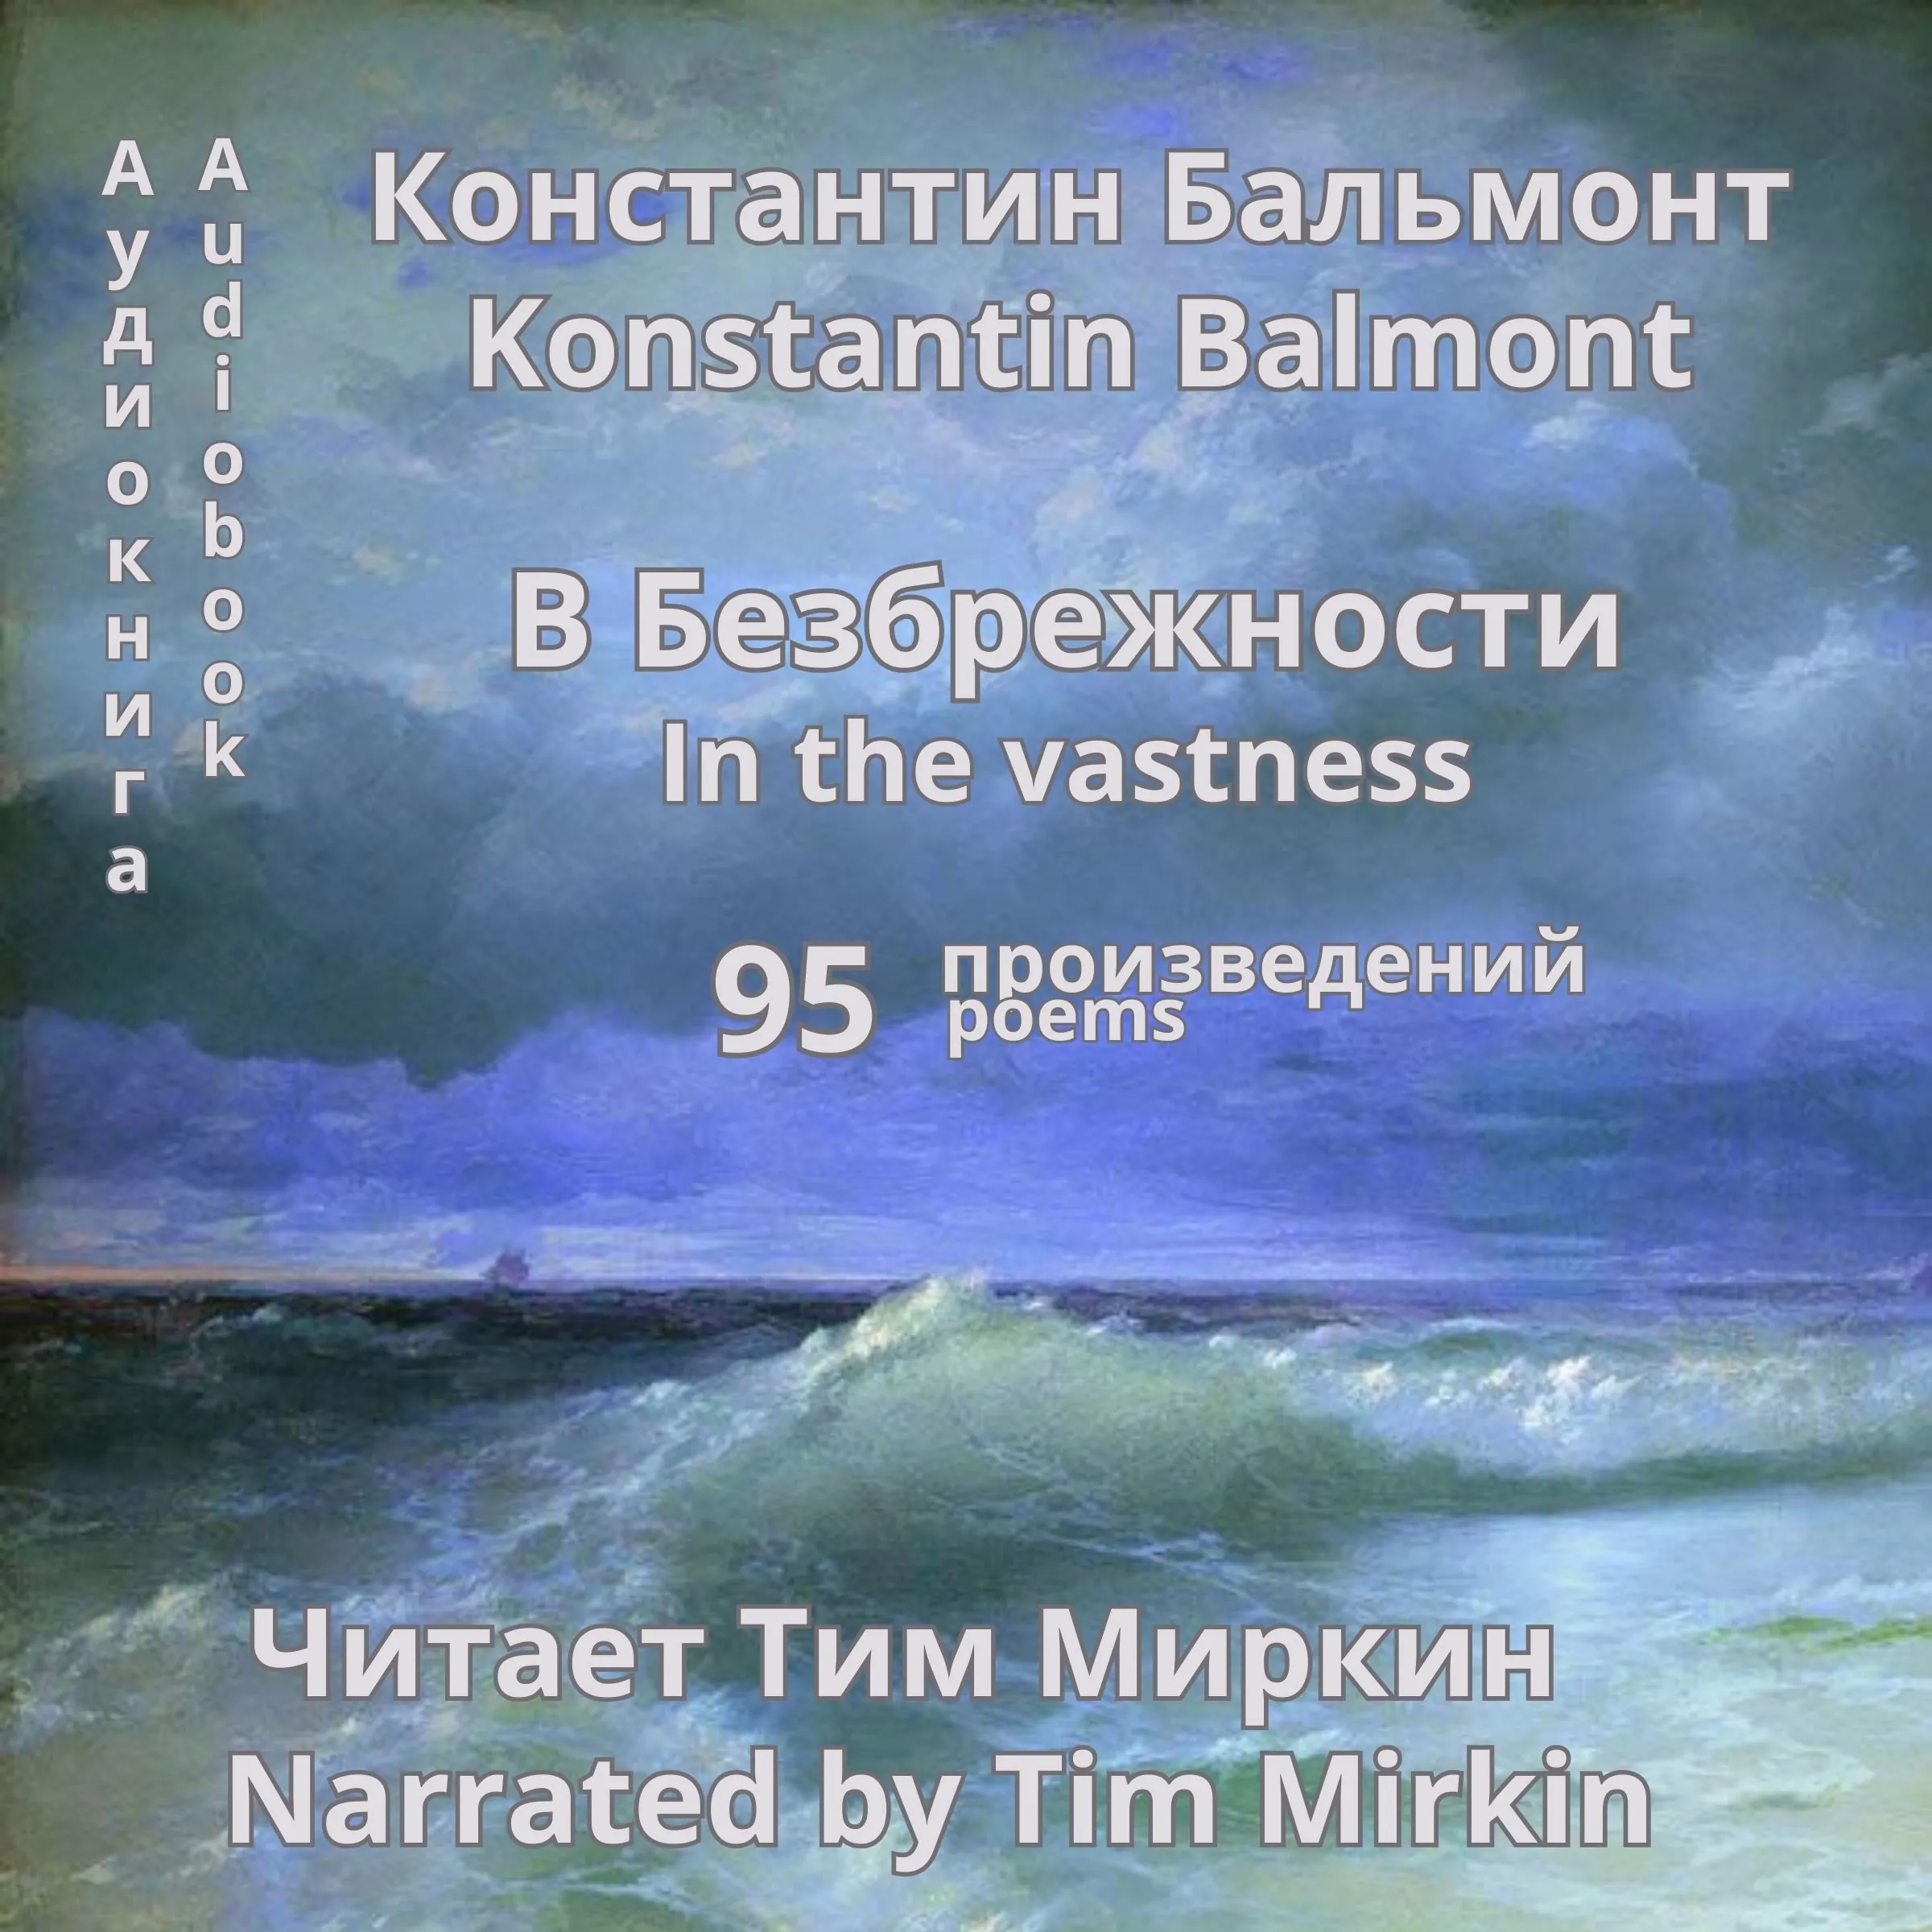 V Bezbrezhnosti by Konstantin Balmont Audiobook